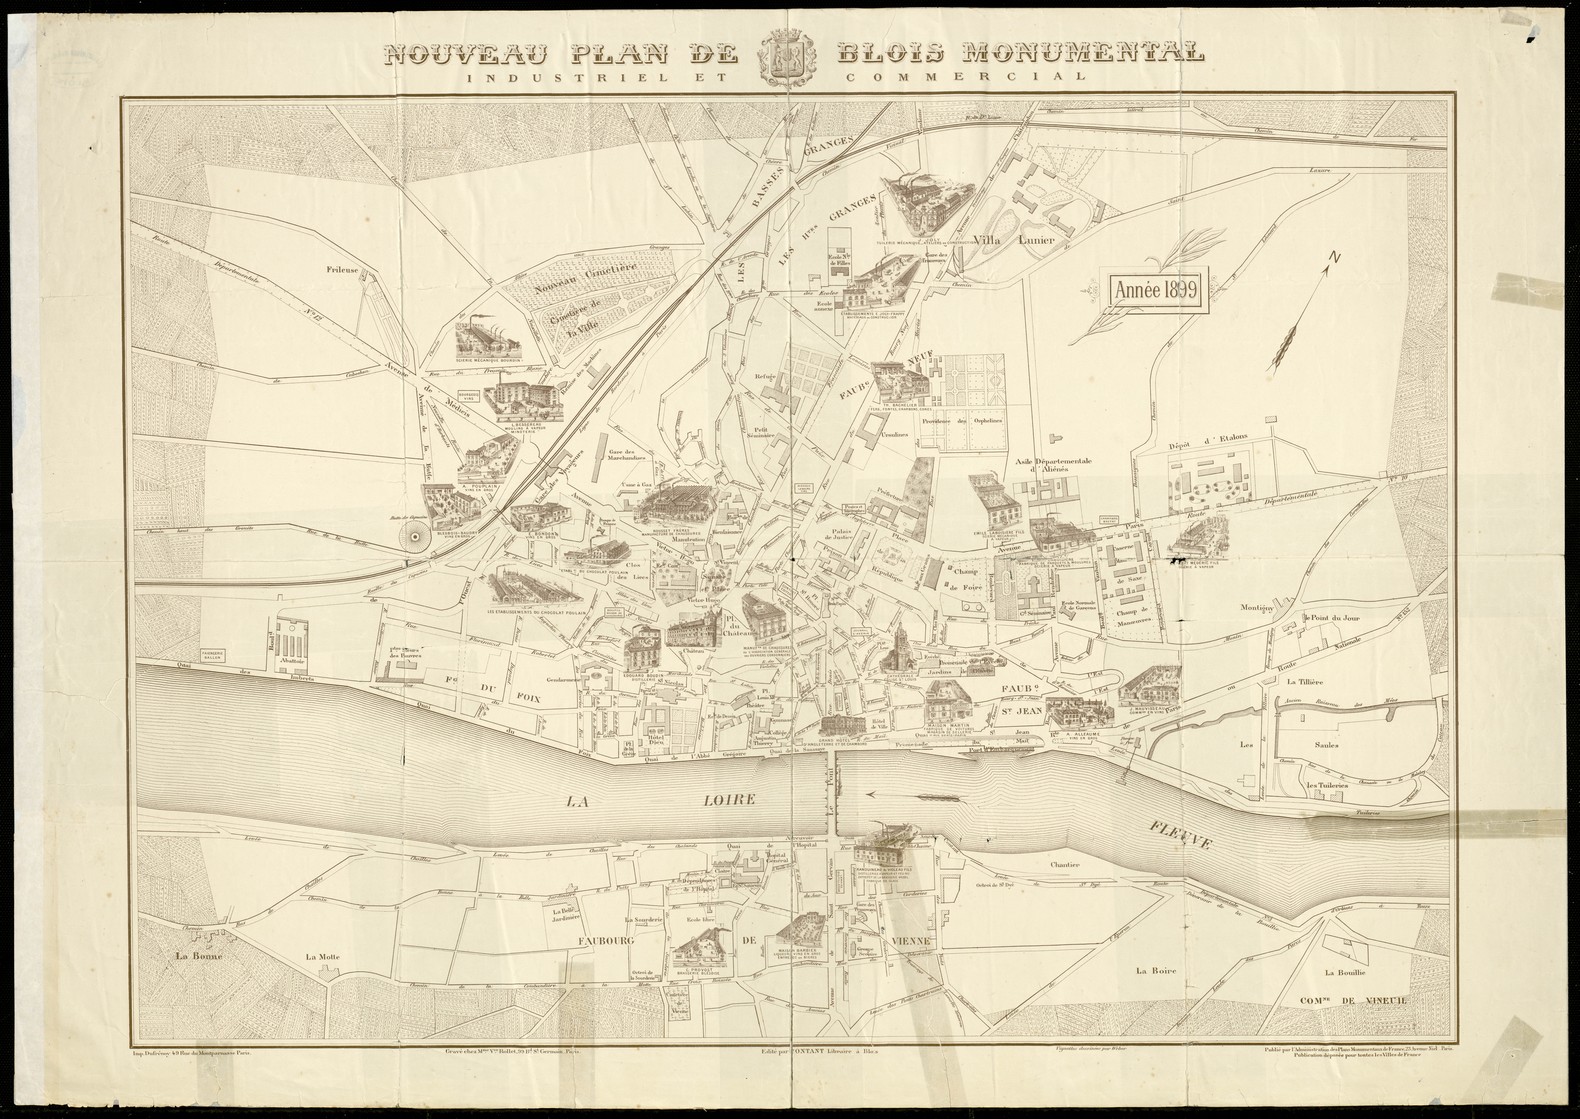 Contant, Nouveau plan de Blois monumental, industriel et commercial, 1899